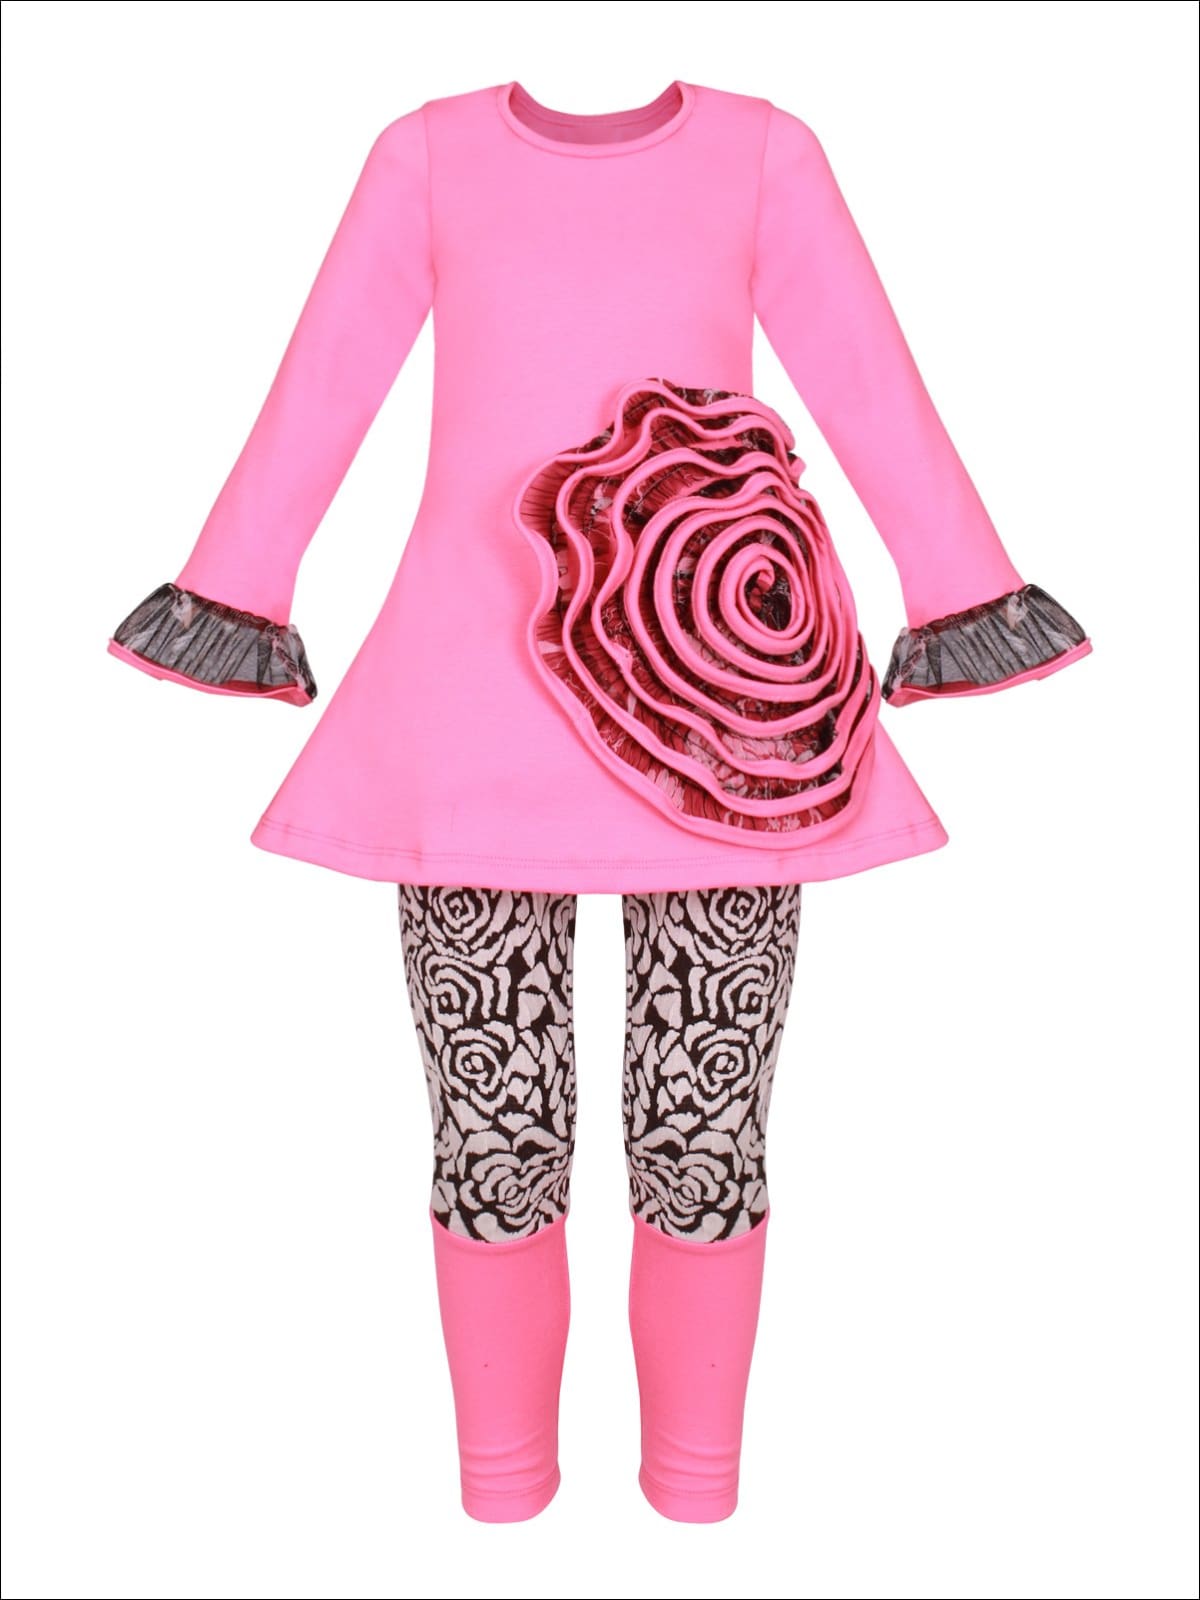 Girls Mesh Flower Ruffled Tunic & Floral Leggings Set - Fuchsia / 2T/3T - Girls Spring Dressy Set